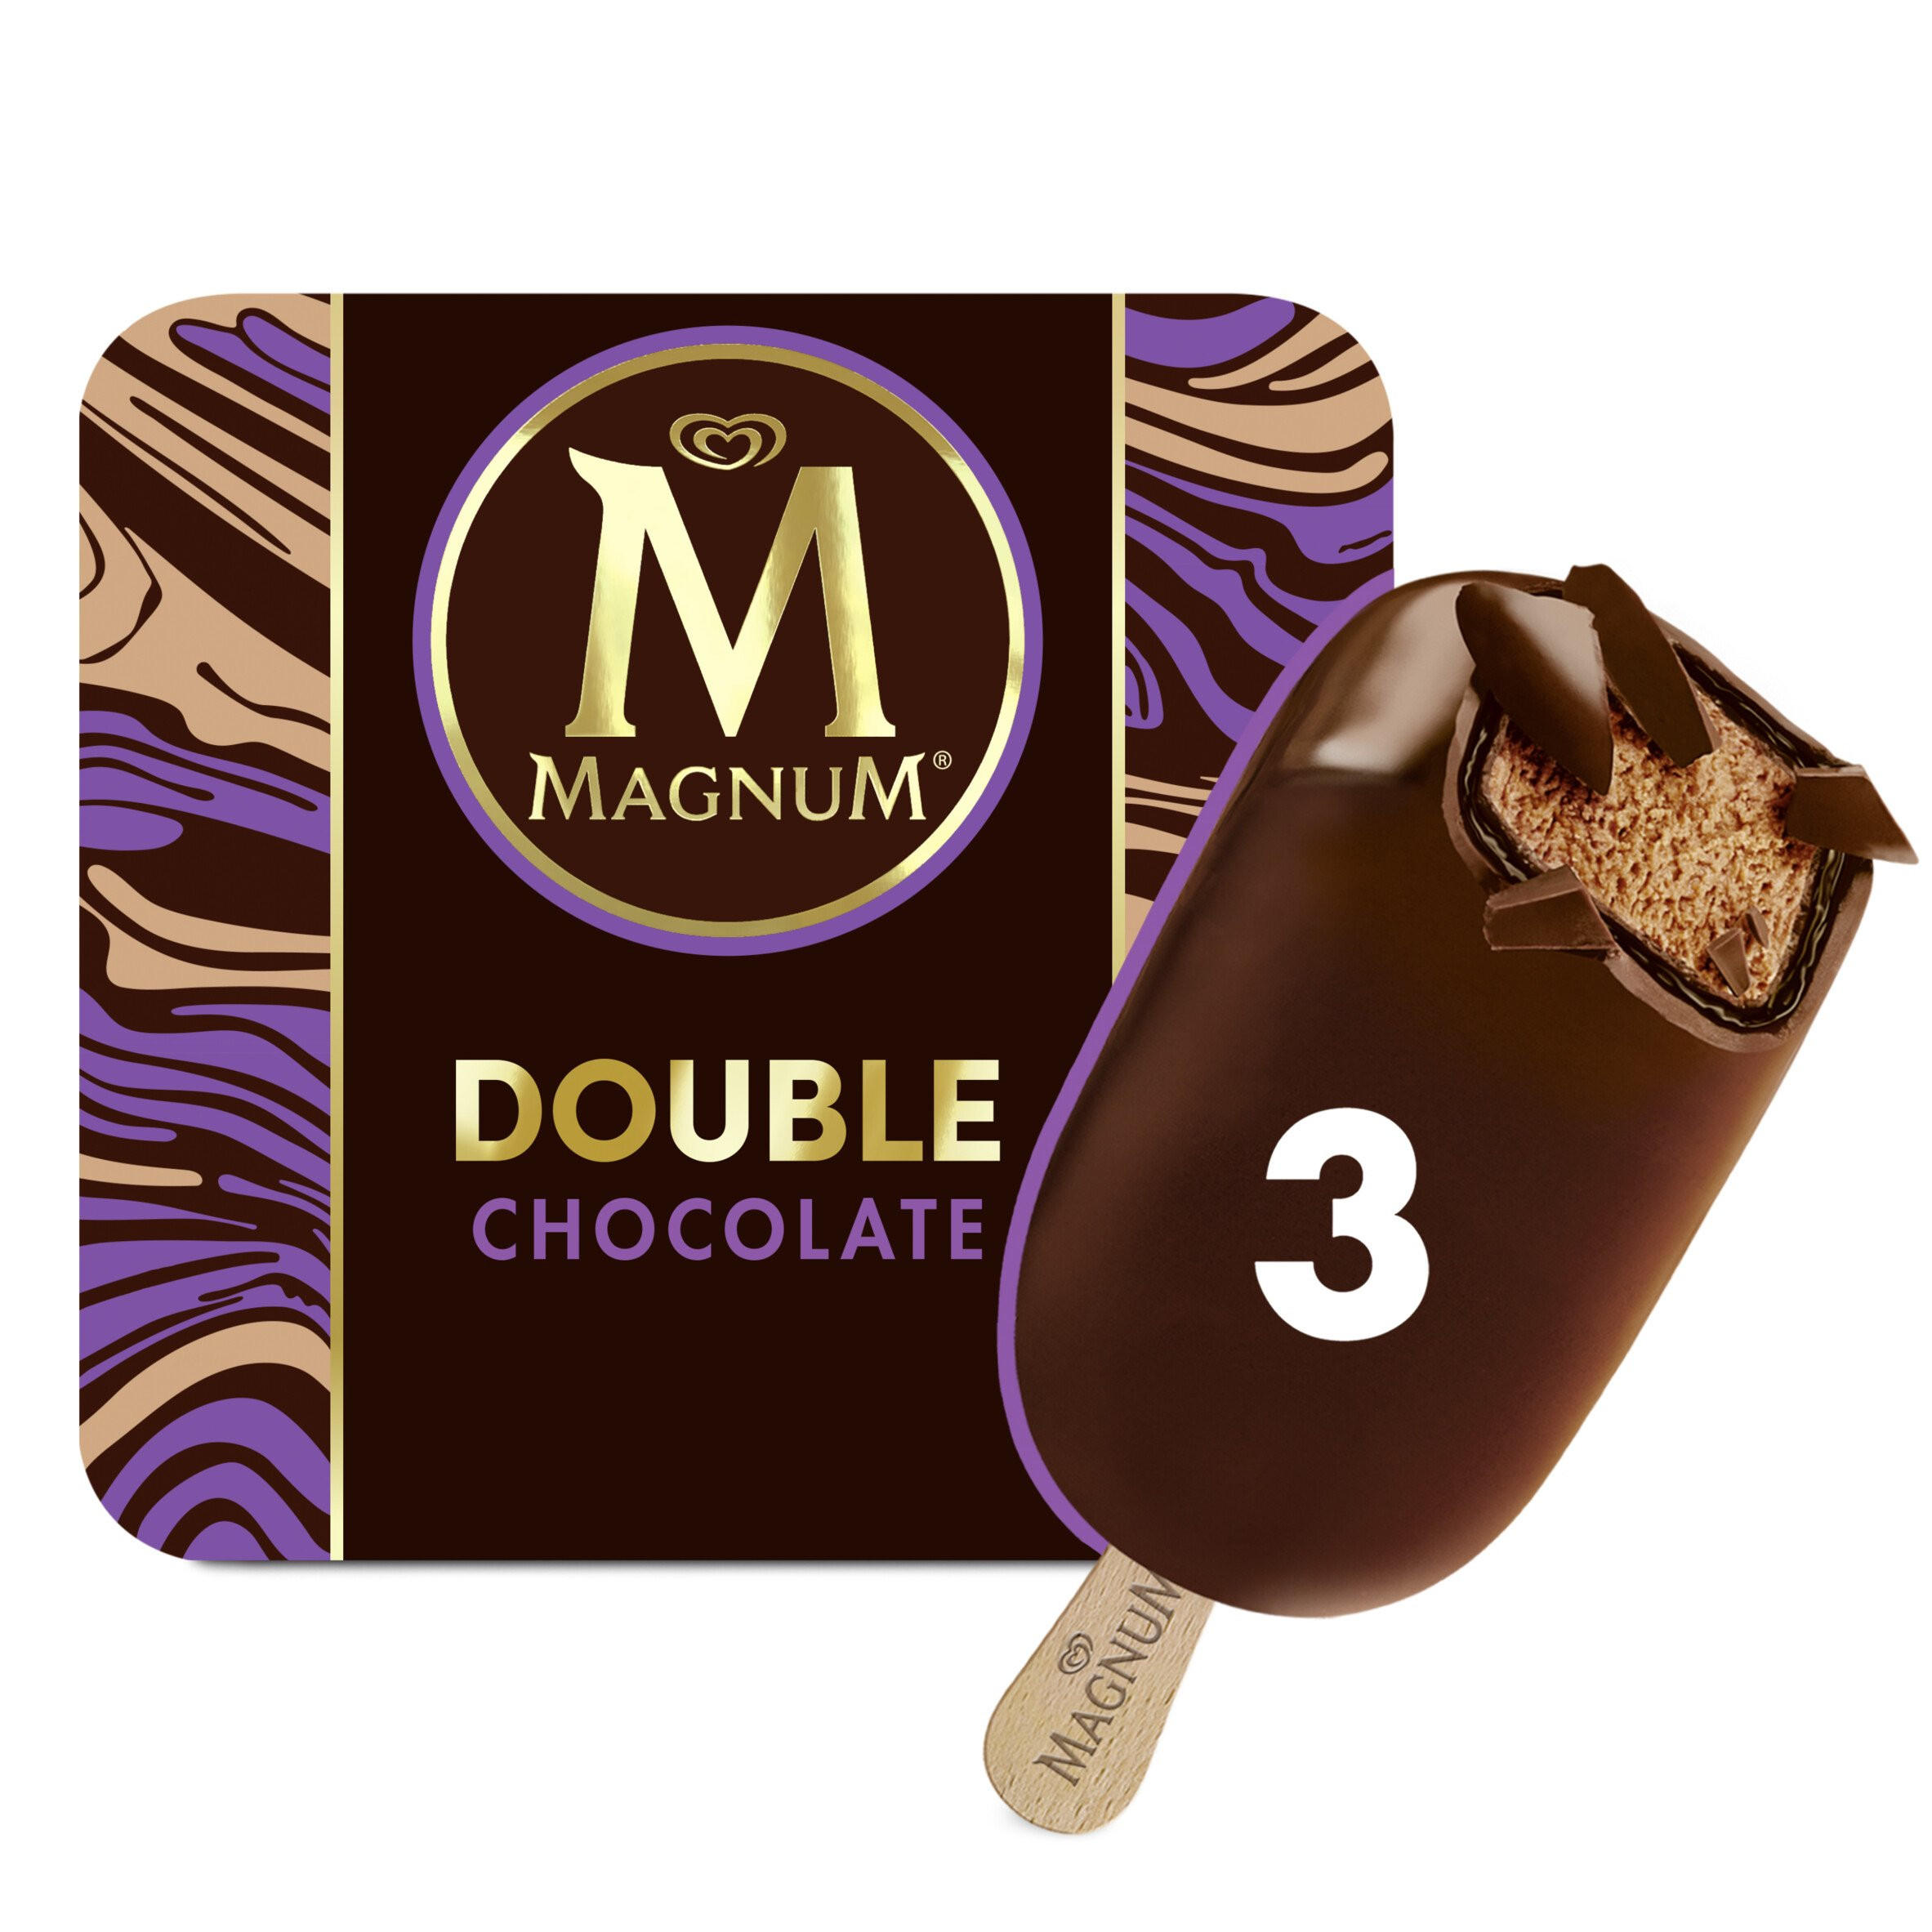 Double Chocolate Ice Cream 3 x 88ml | Ice Cream Cones, Sticks & Bars Iceland